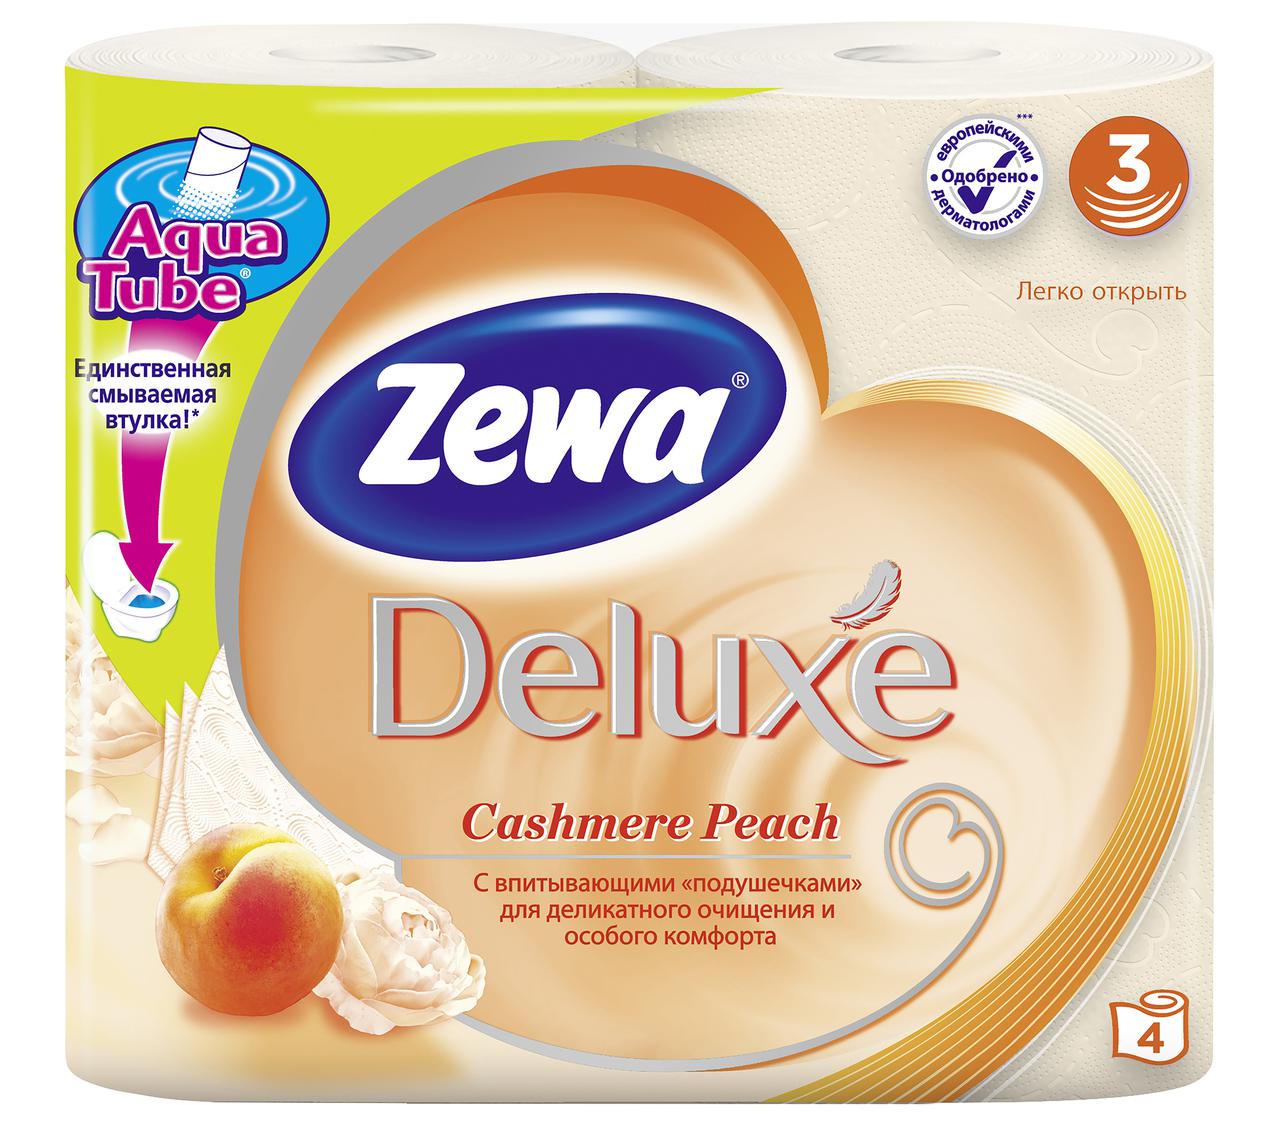 Туалетная бумага "Zewa Deluxe" трёхслойная,  с ароматом персика, 4рул./упак. (Цена с НДС)